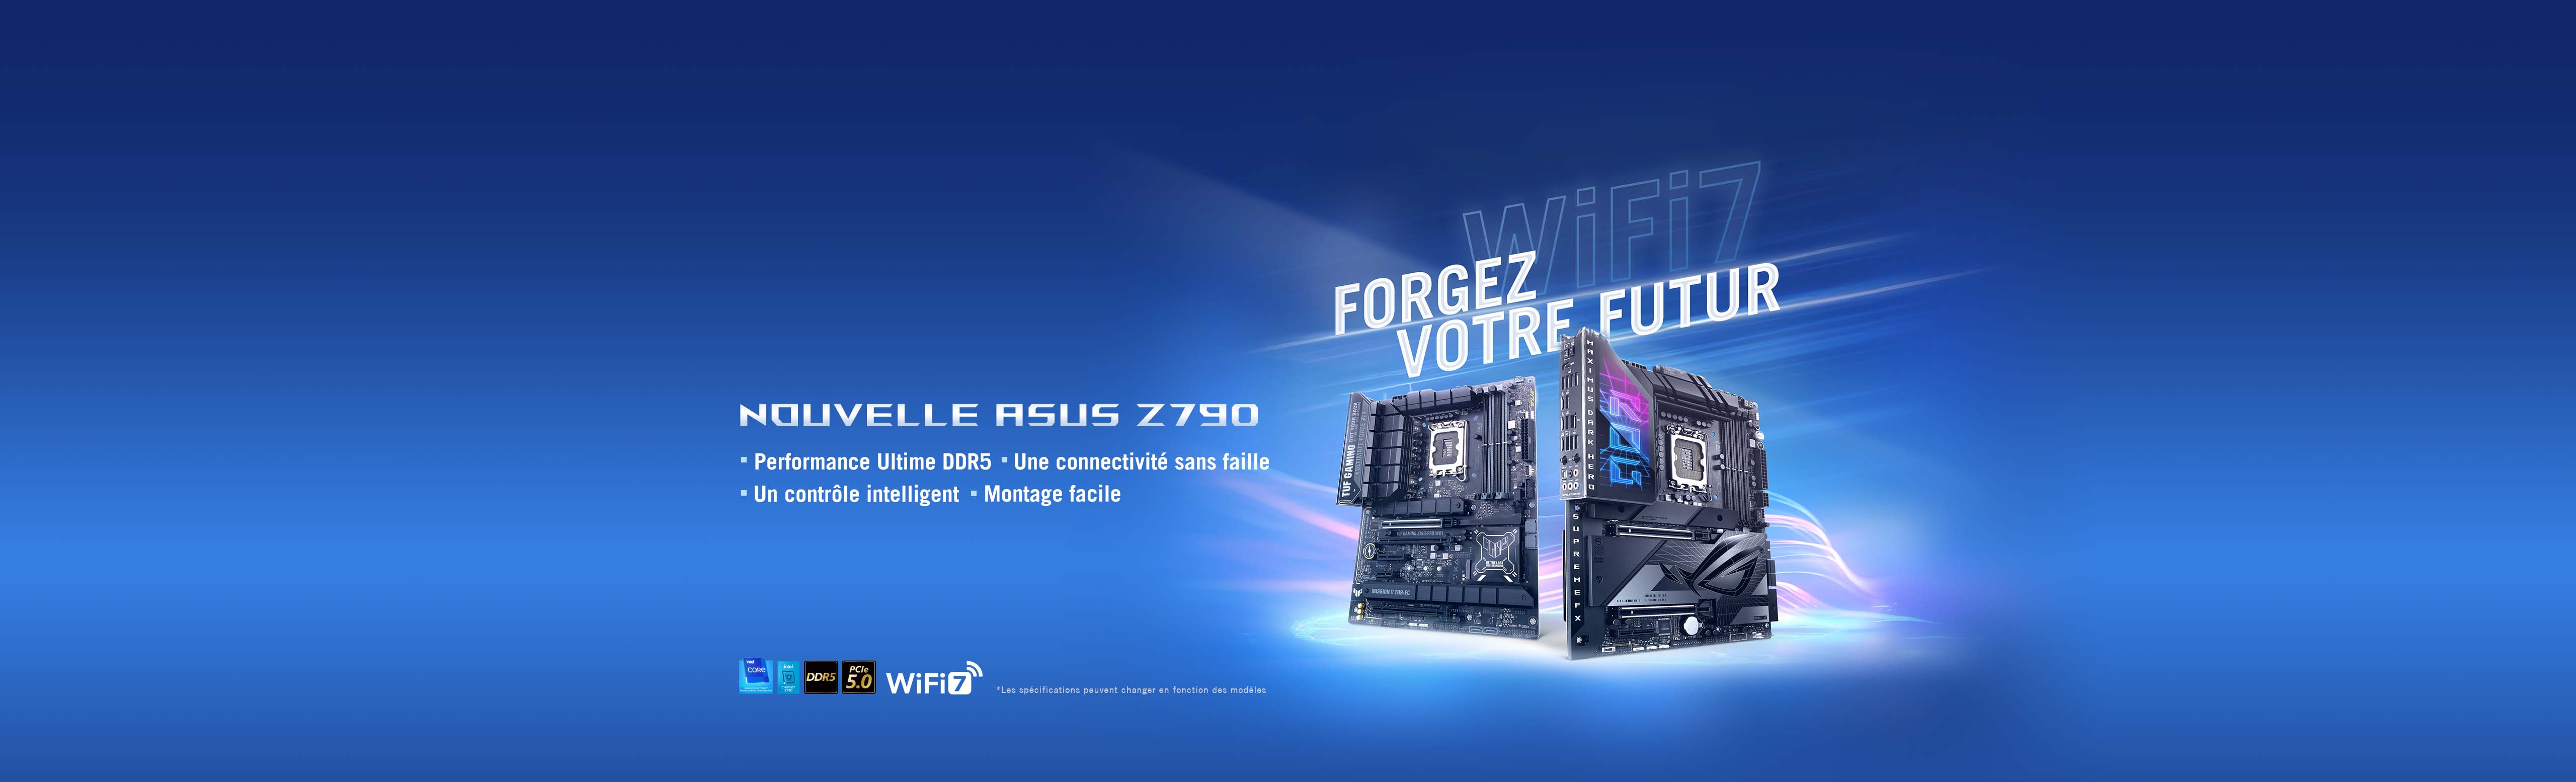 FORGEZ VOTRE AVENIR – NOUVEAUTÉS ASUS Z790, avec Performances ultimes DDR5, Connectivité sans limite, Contrôle intelligent et Montage simplifié.